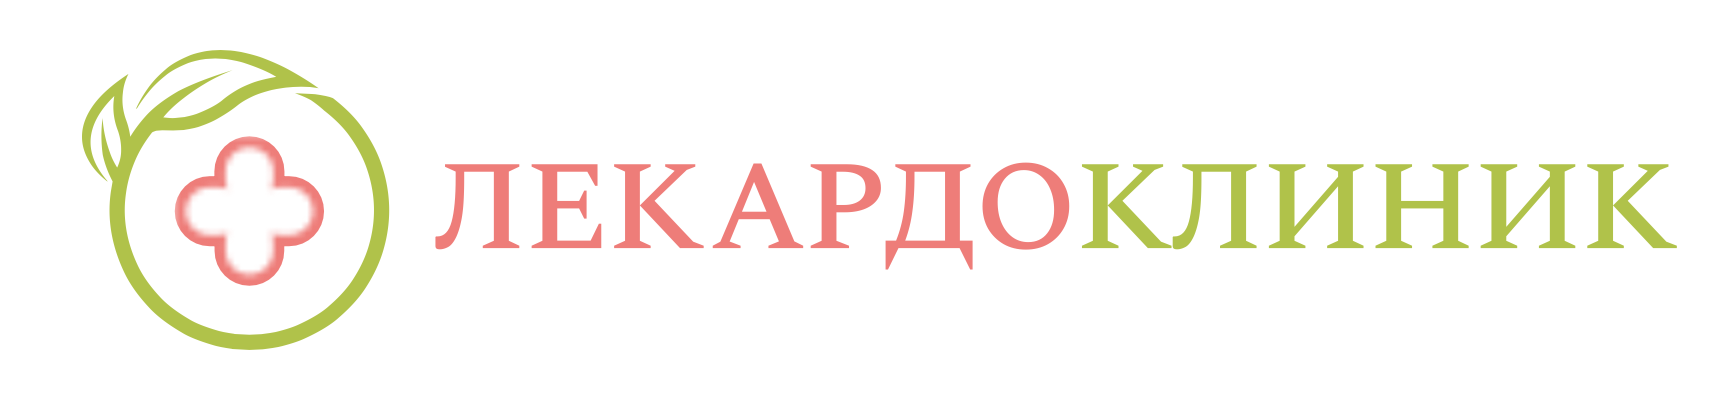 Логотип компании Лекадро Клиник